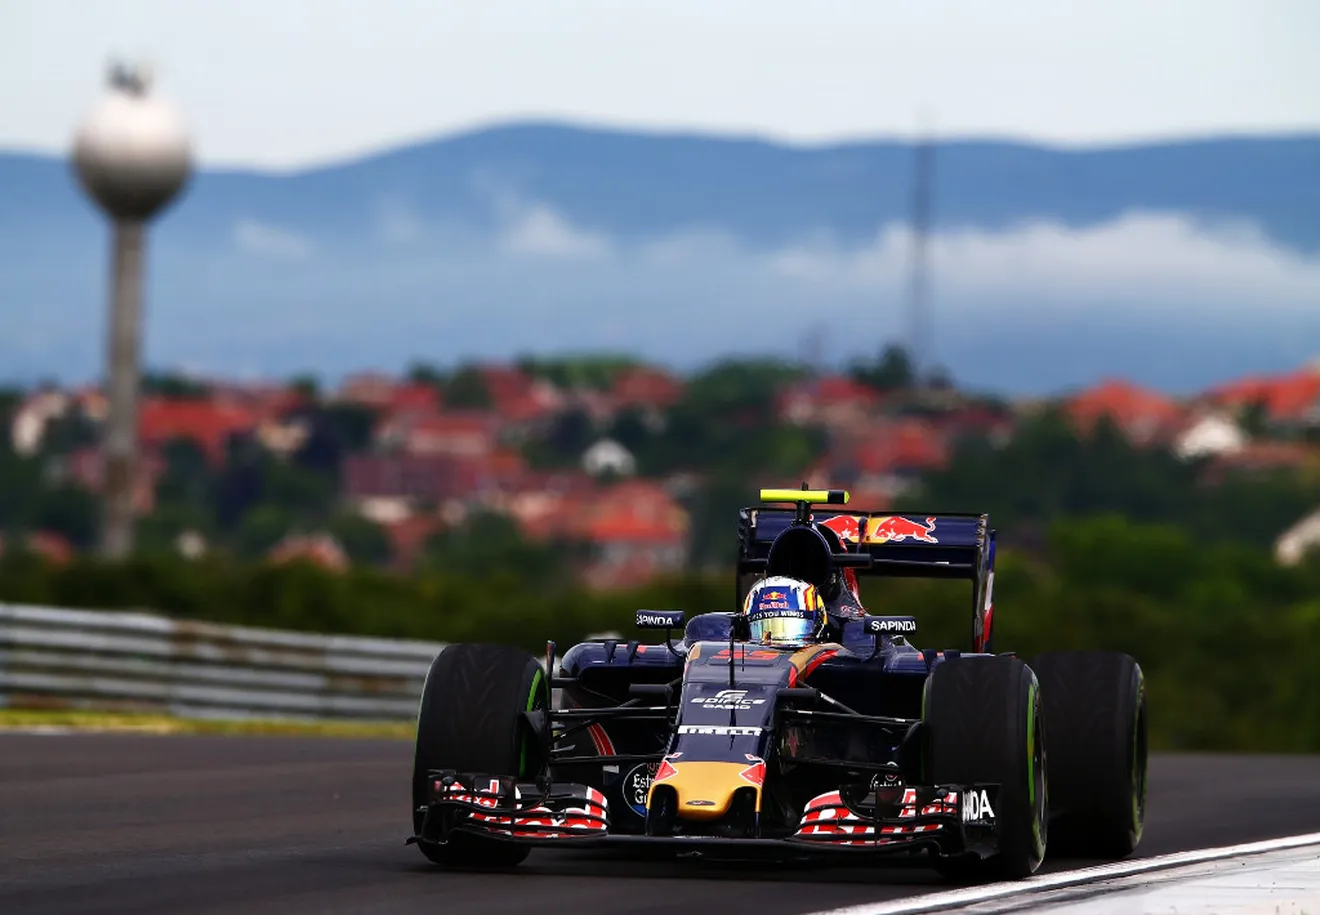 Brillante sexto puesto para Carlos Sainz en la parrilla del Gran Premio de Hungría